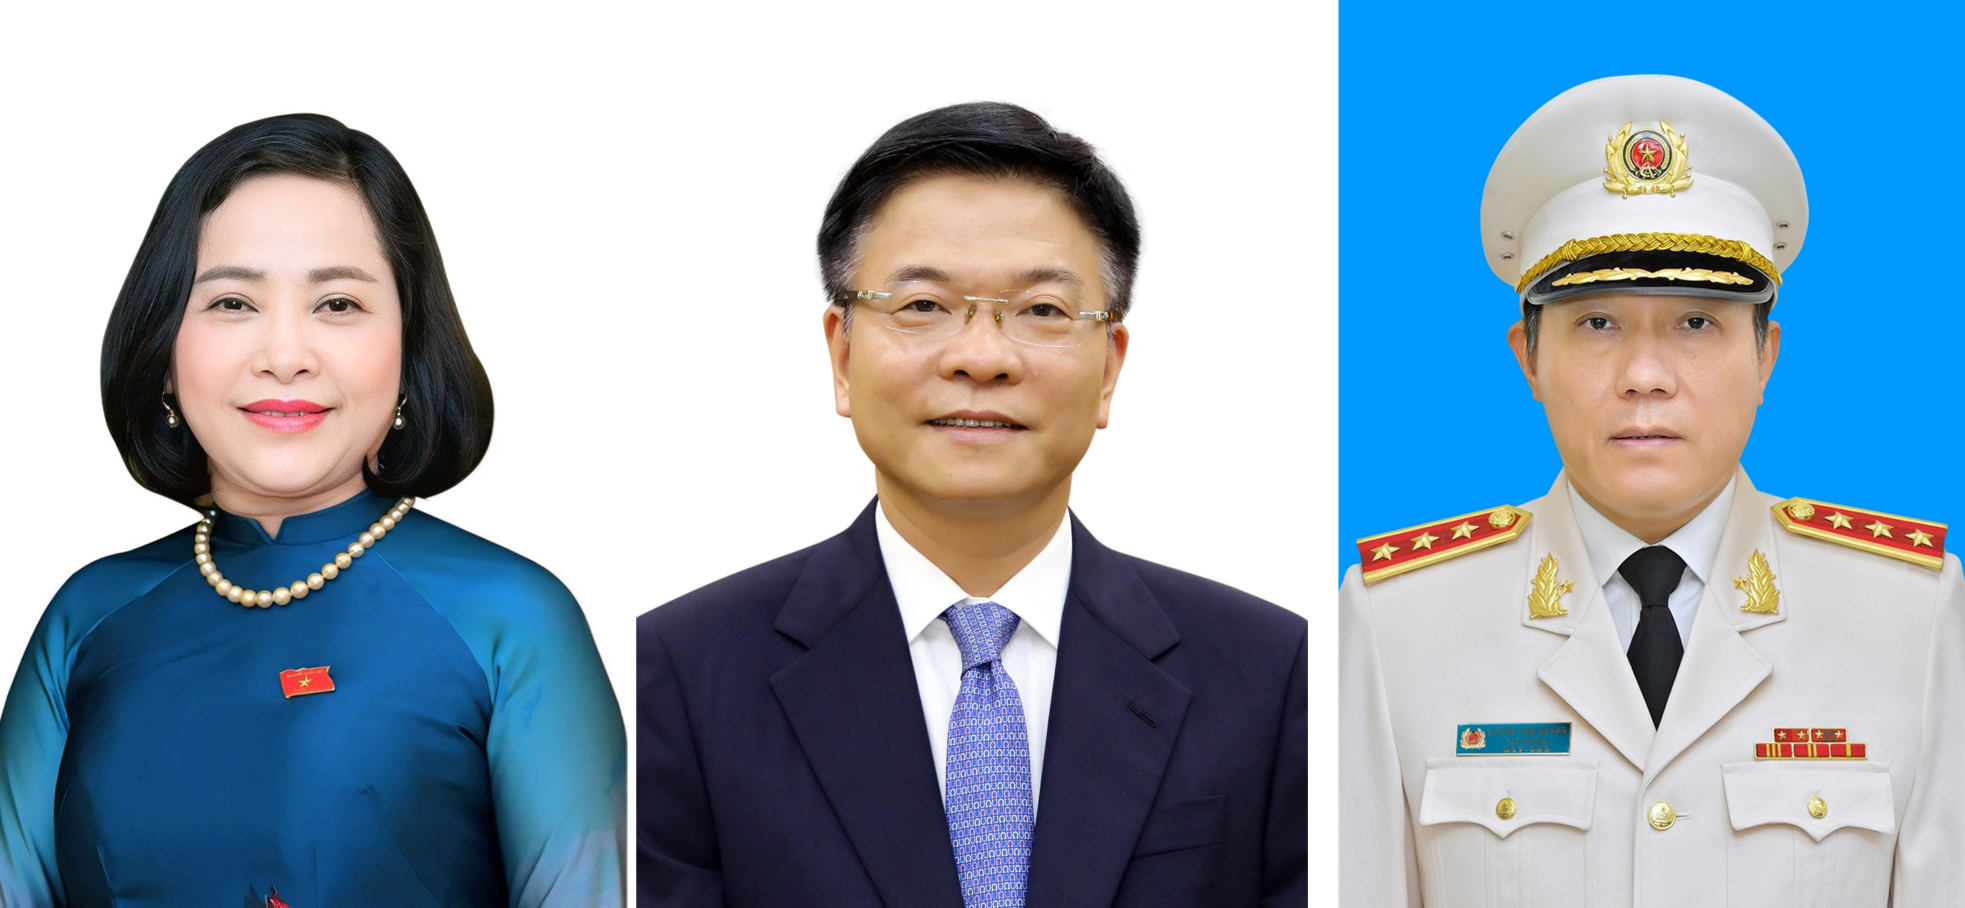 Từ trái qua phải: Phó Chủ tịch Quốc hội Nguyễn Thị Thanh, Phó Thủ tướng Chính phủ Lê Thành Long, Bộ trưởng Bộ Công an Lương Tam Quang. Ảnh: Quochoi.vn